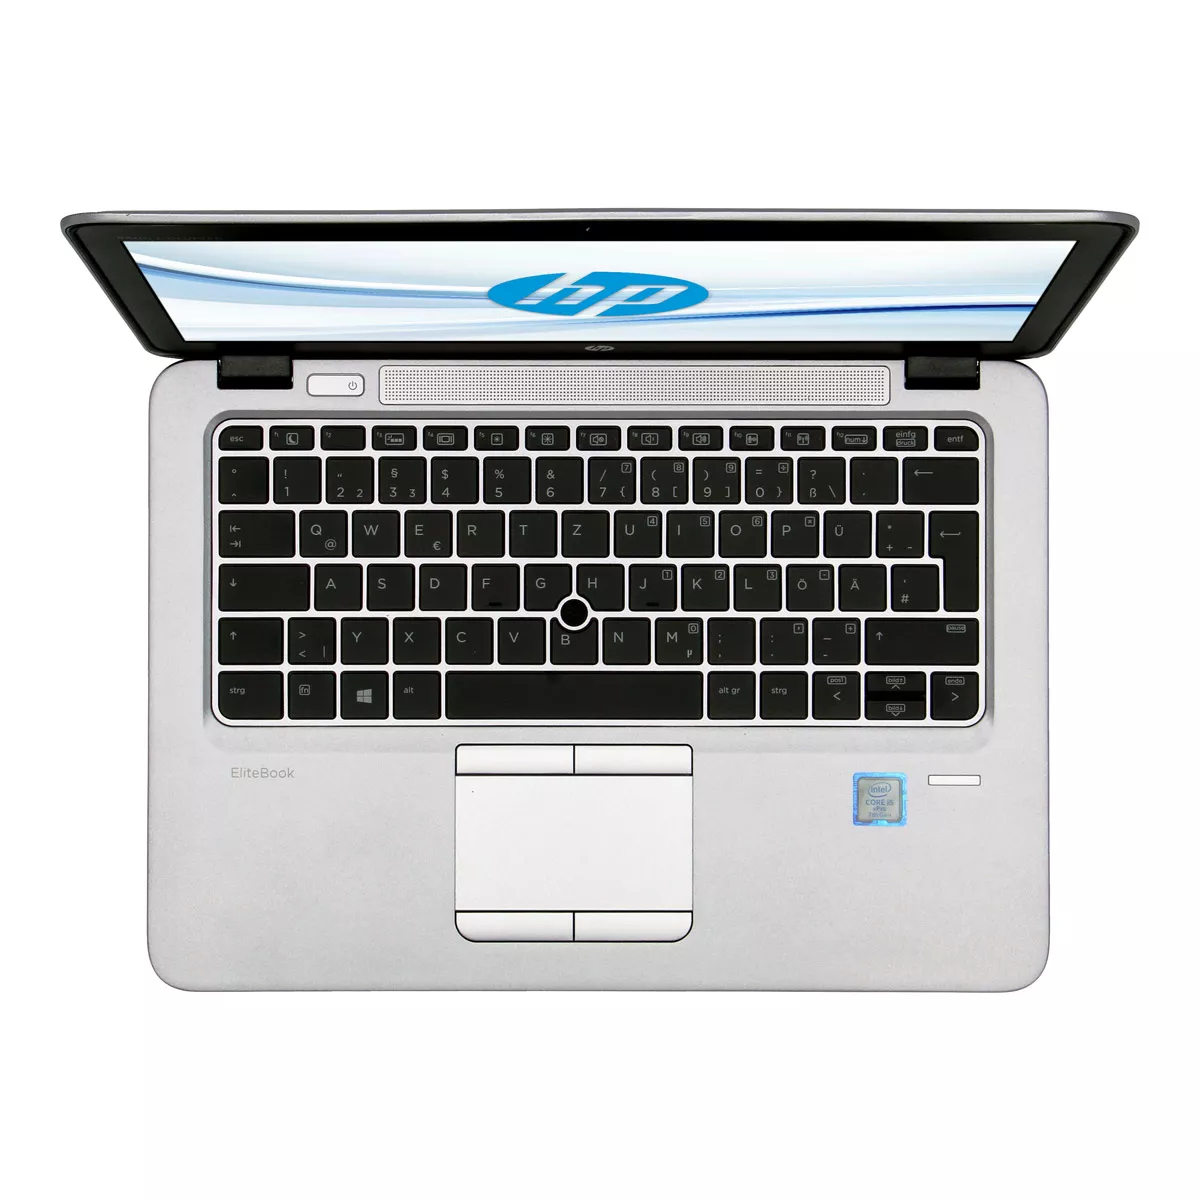 HP EliteBook 820 G3 Core i5 6200U 8 GB 128 GB SSD Webcam A